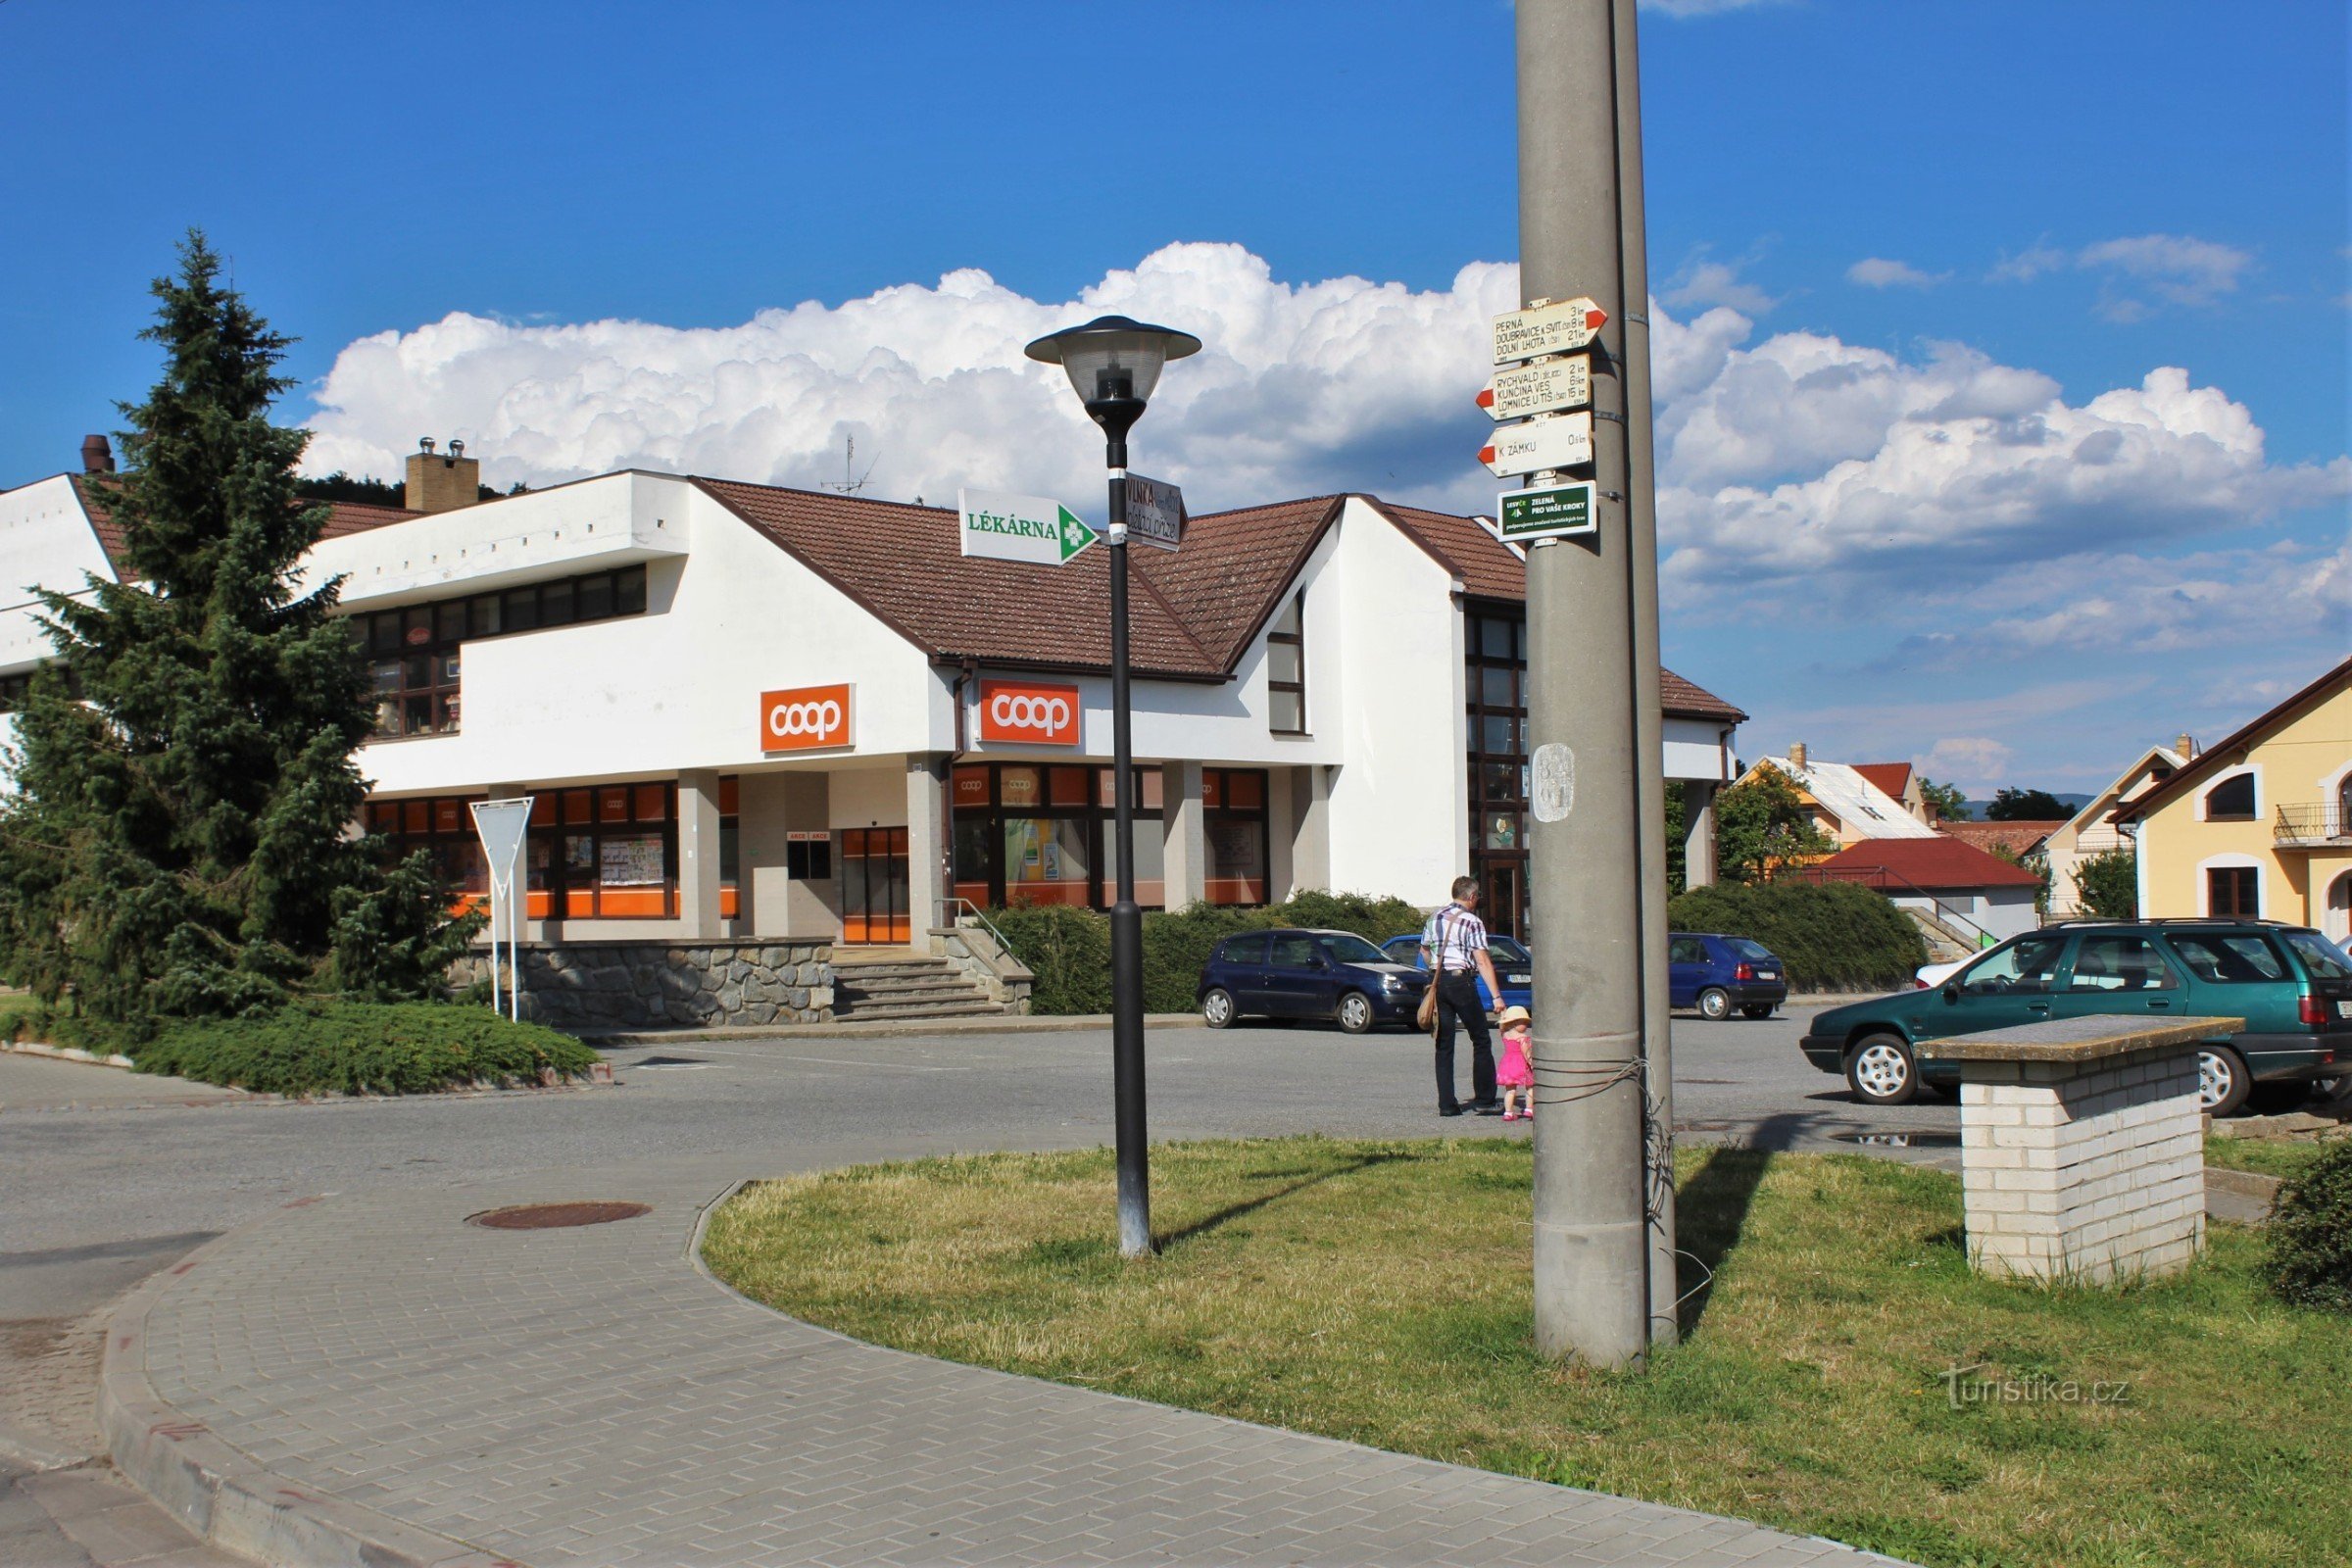 Răscrucea turistică este situată pe Comenské náměstí